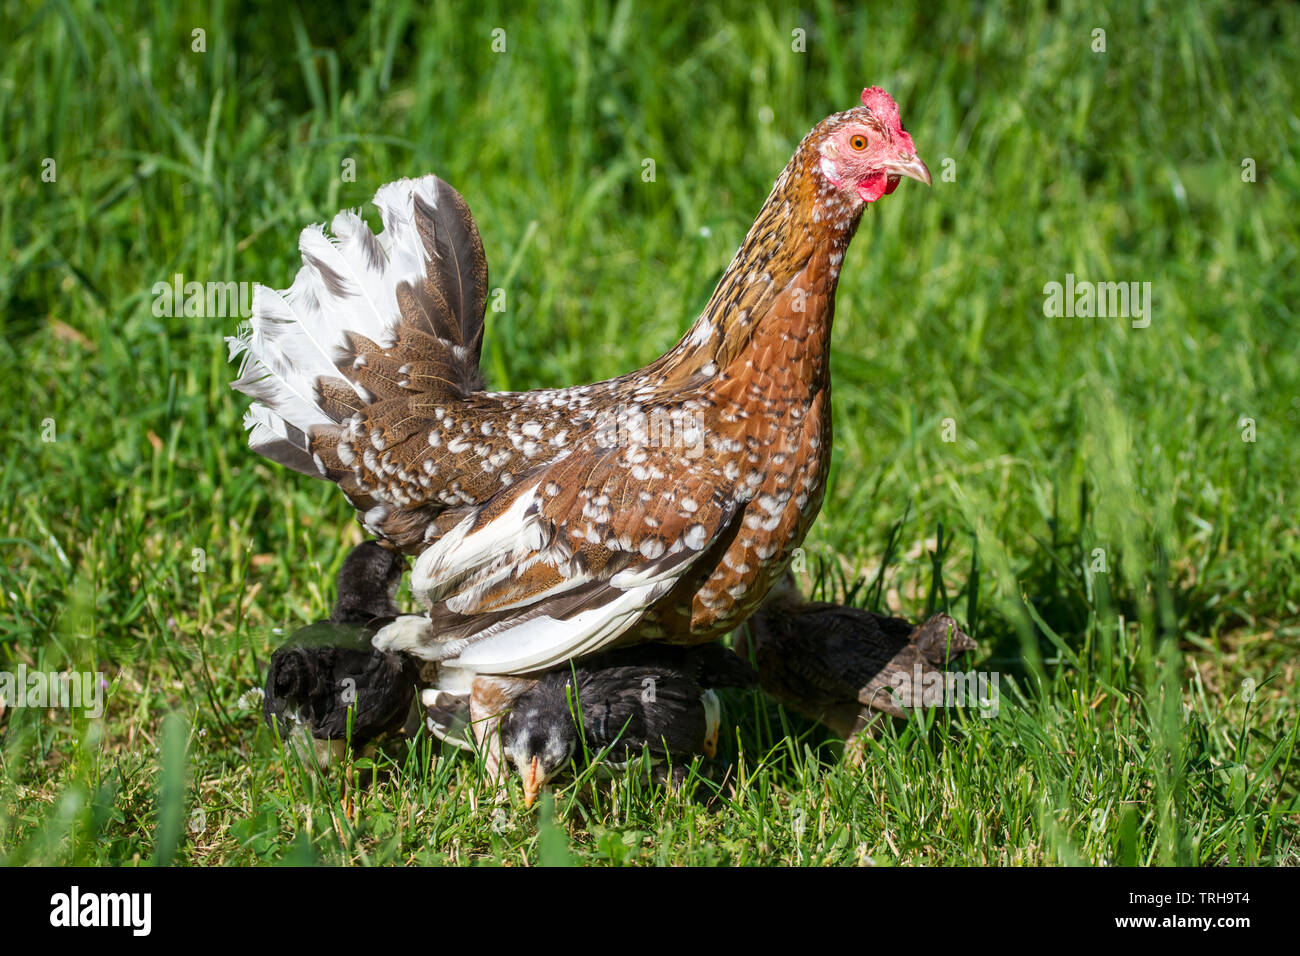 Henne und flügge der Rasse Stoapiperl/Steinhendl, einer vom Aussterben bedrohten Rasse Huhn aus Österreich und genießen Sie einen sonnigen Tag auf der Wiese Stockfoto